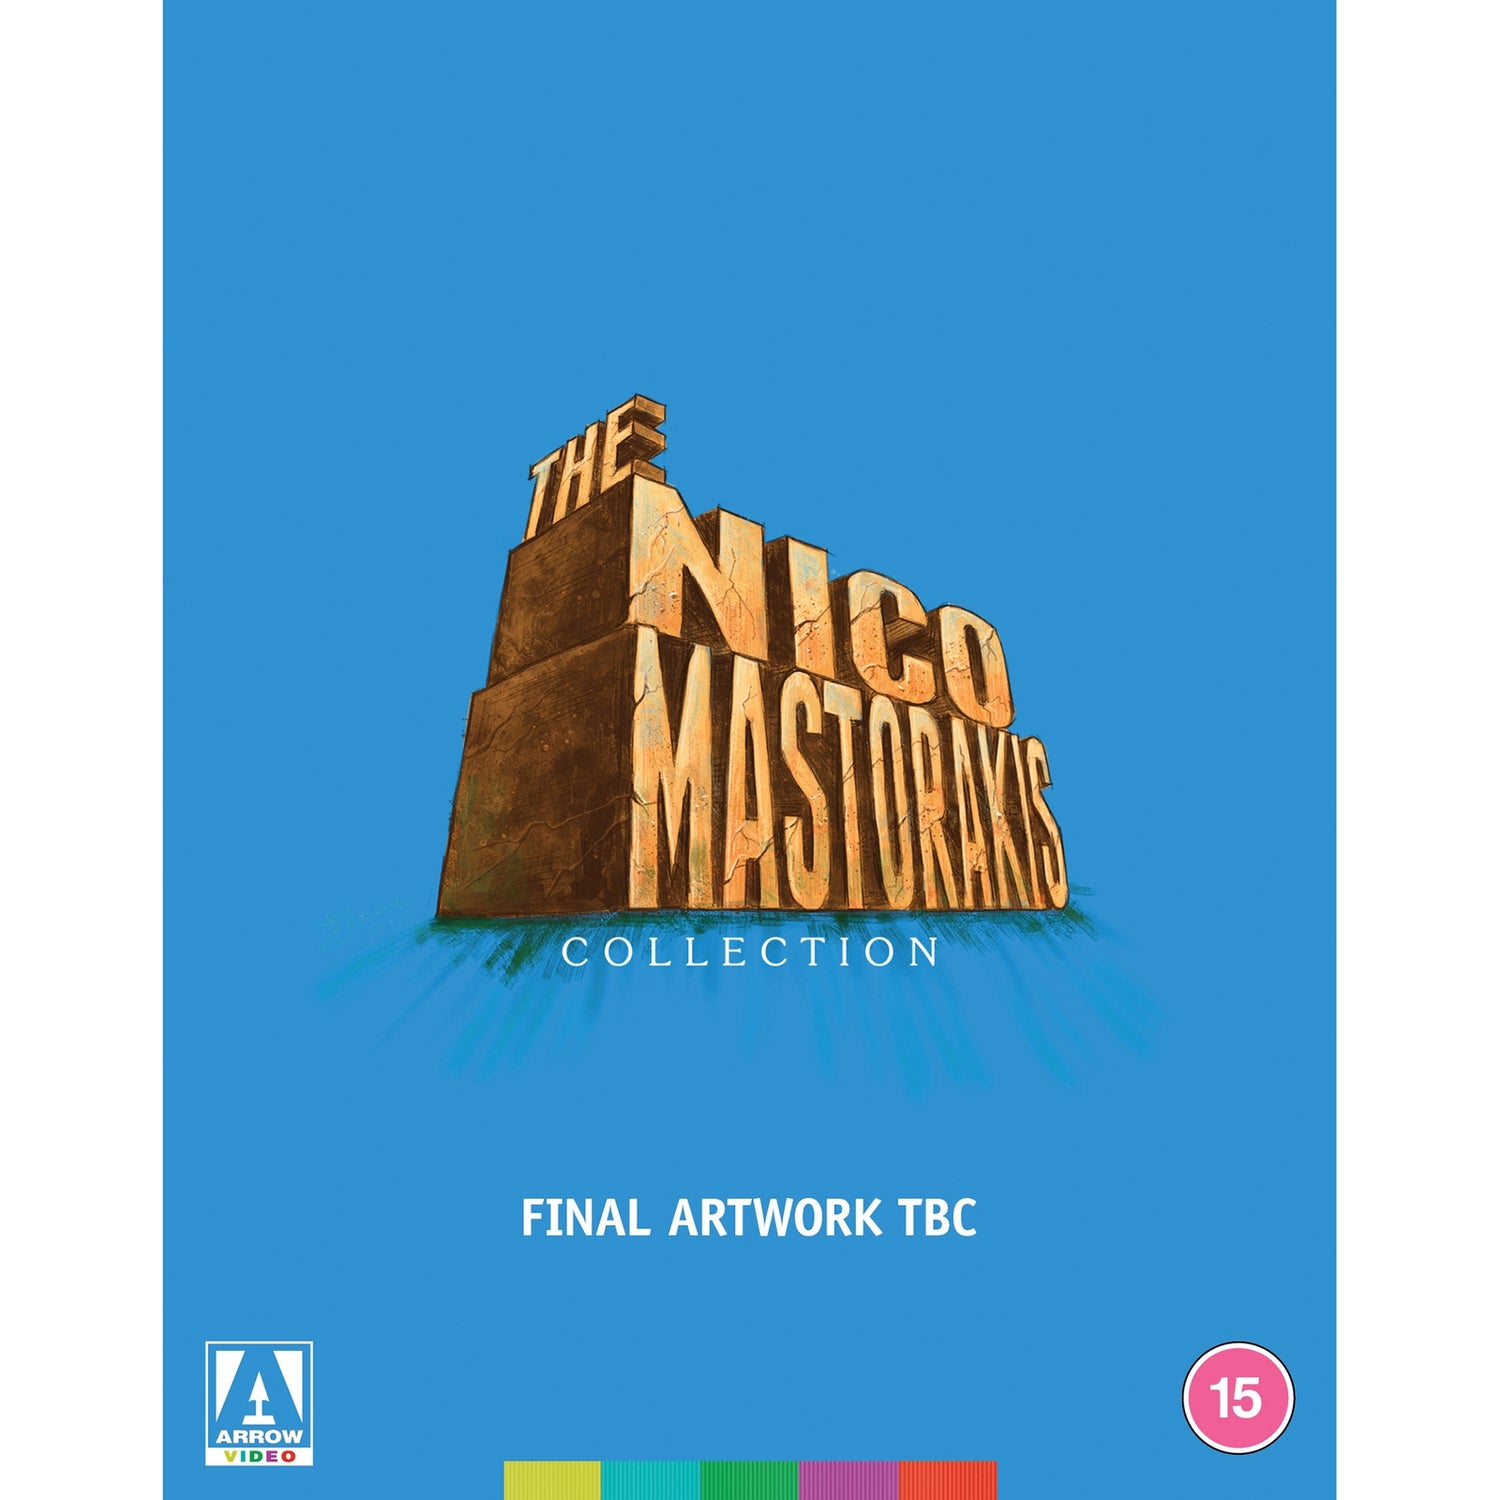 The Nico Mastorakis Collection Limited Edition Blu-ray